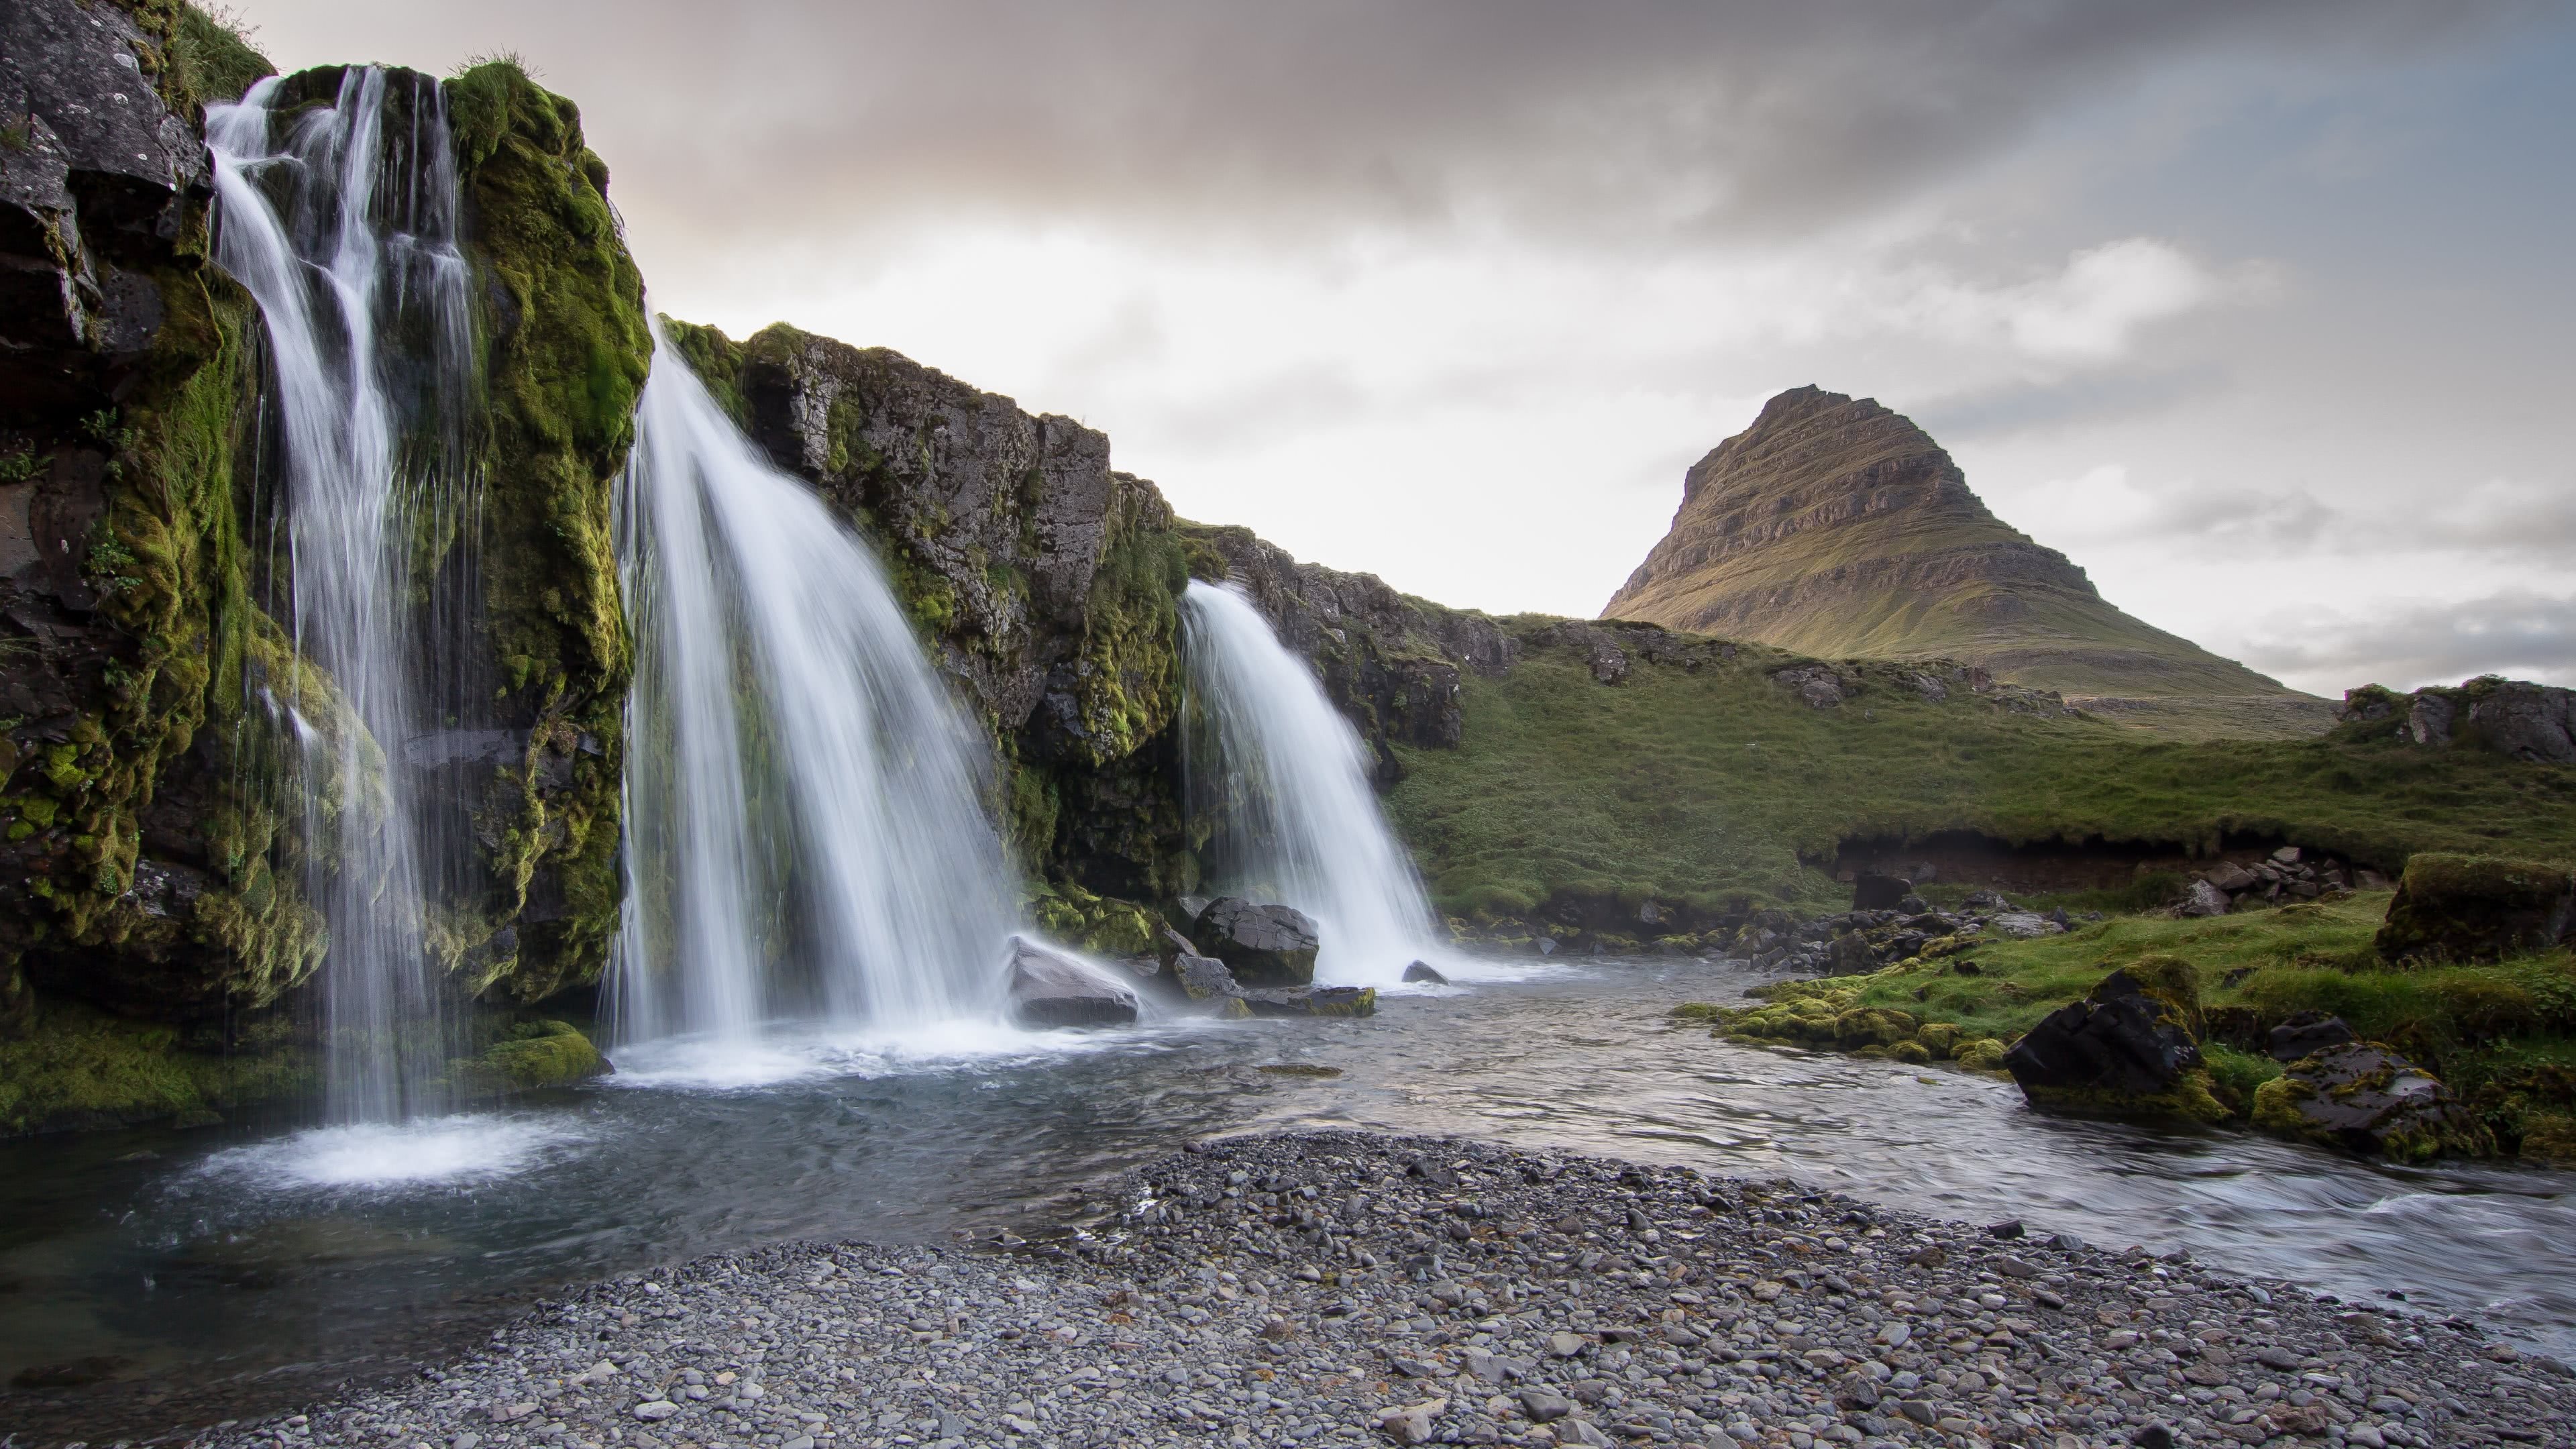 Iceland Waterfall, Kirkjufell Mountain, 4K UHD Wallpaper, Dramatic Beauty, 3840x2160 4K Desktop